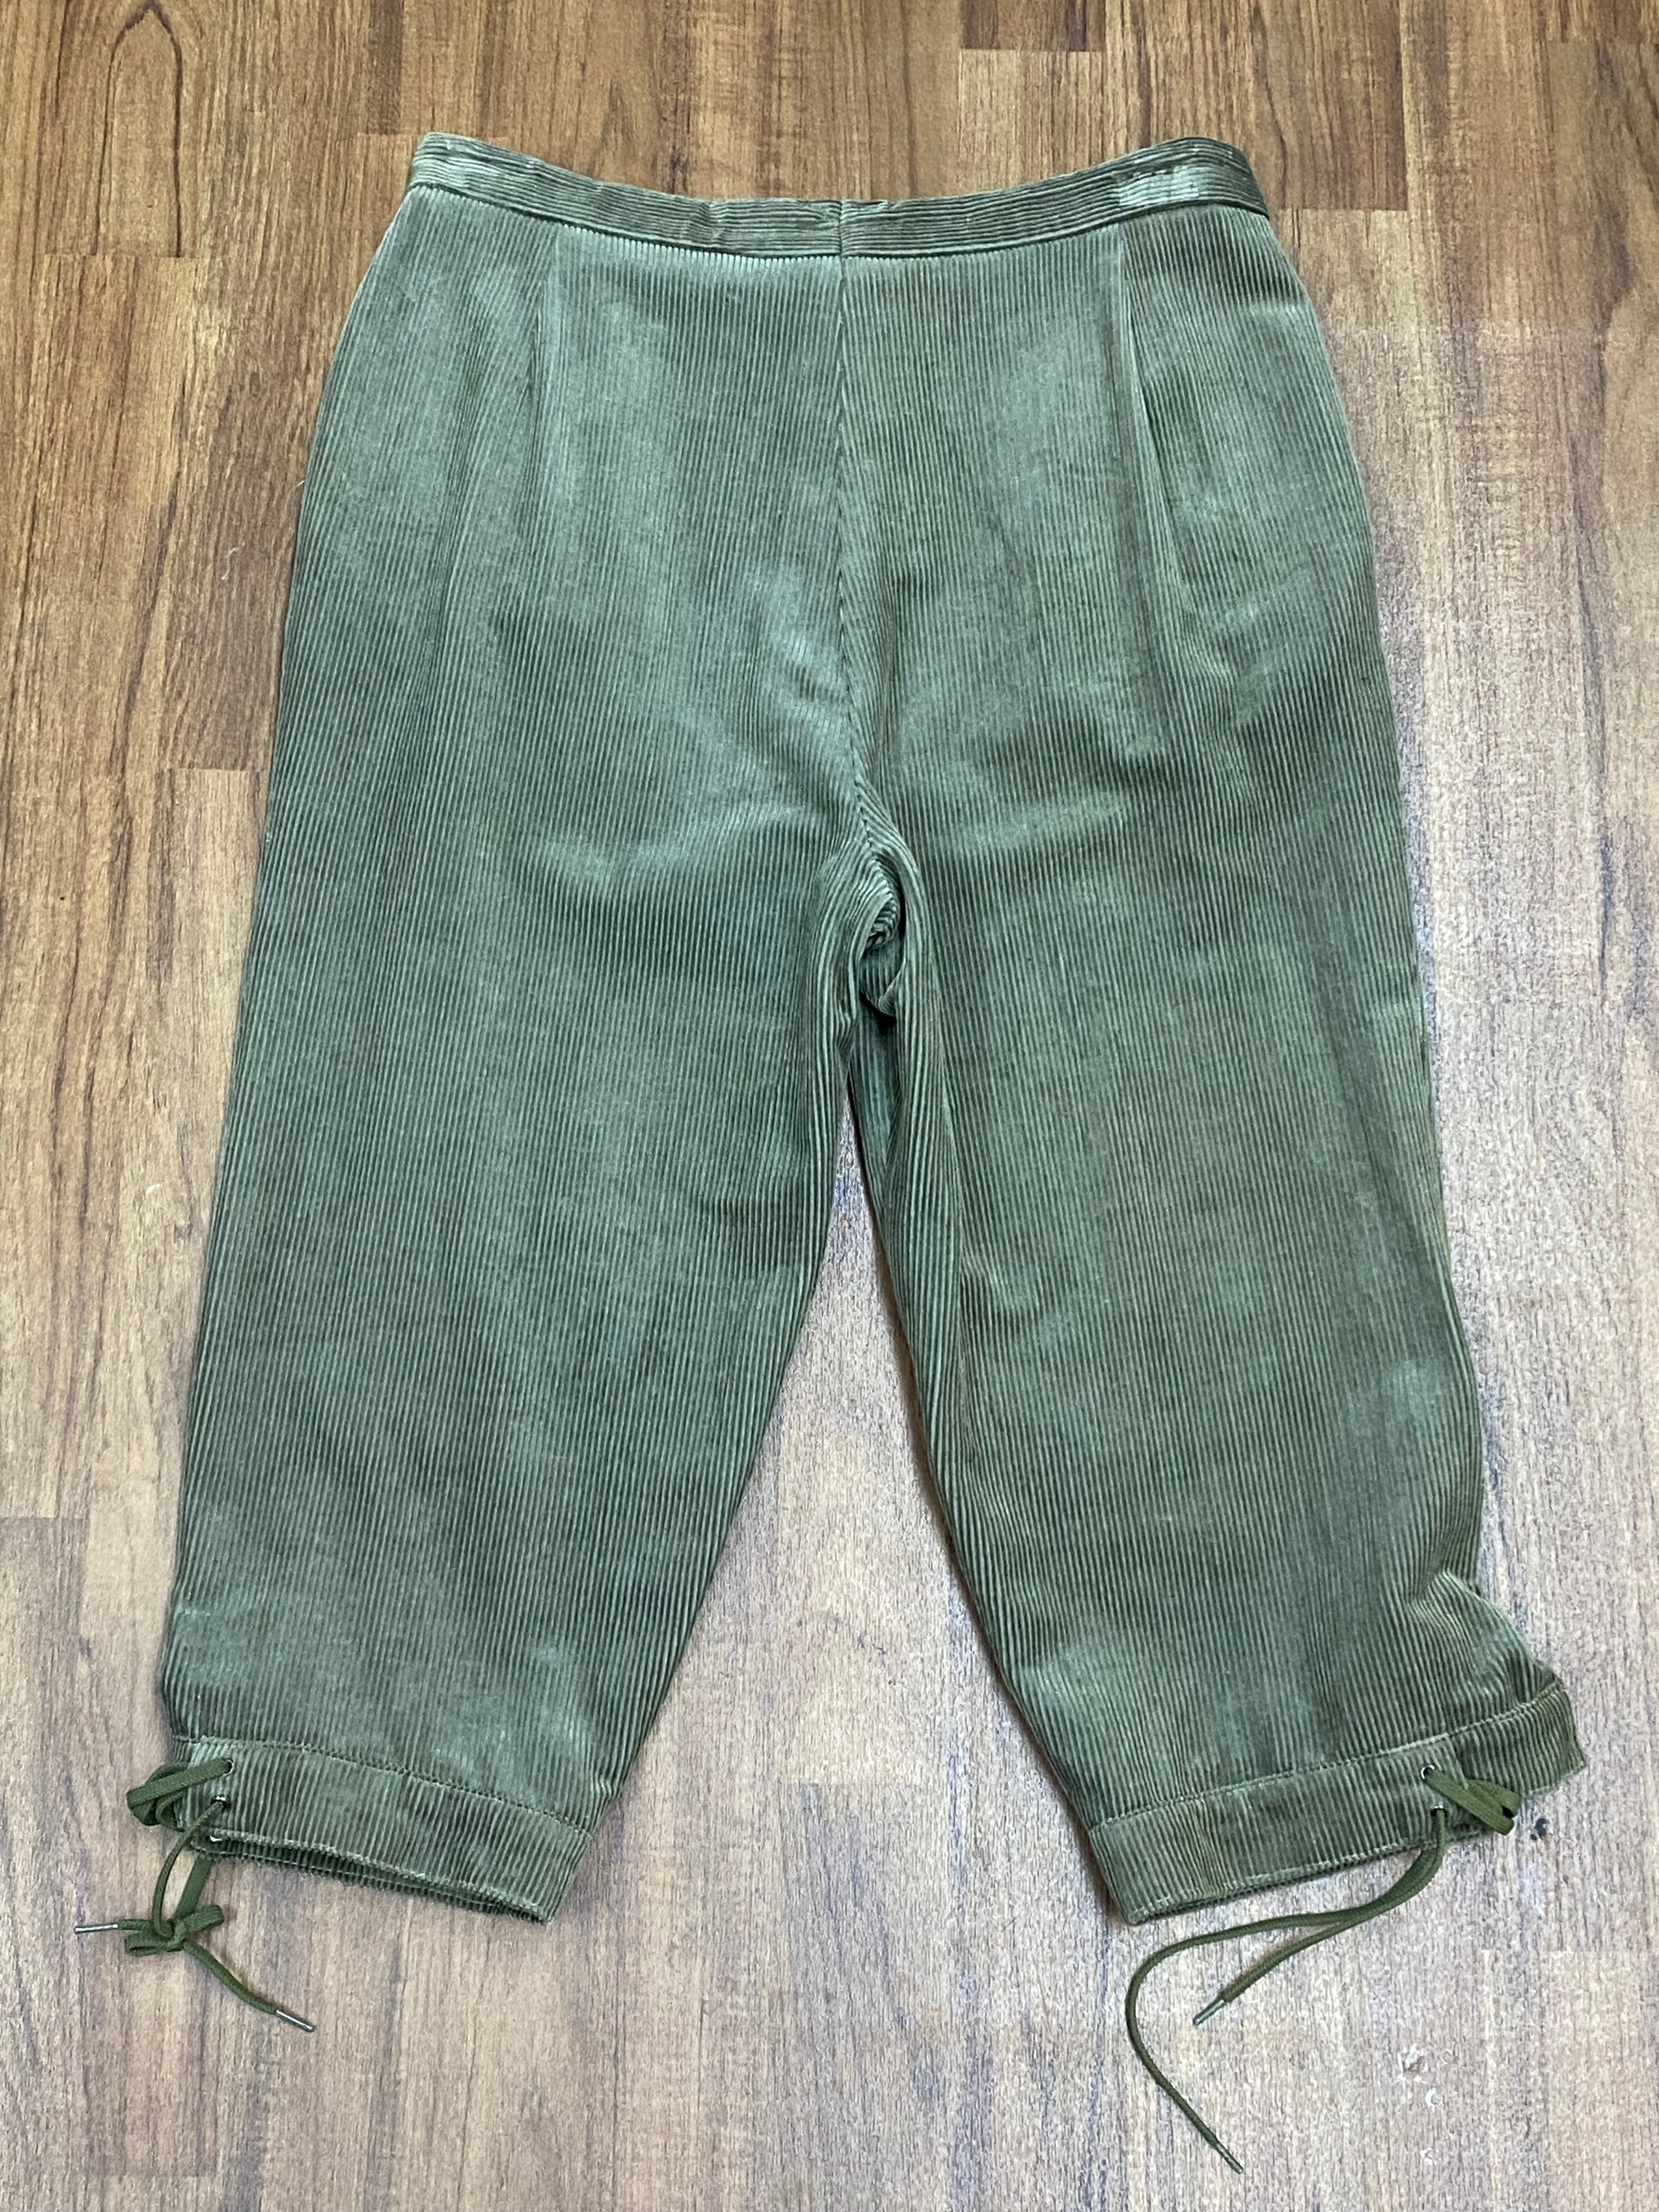 Grüne Vintage Trachtenhose, Kniebund Cordhose Bundweite 86 cm Unisex Gr.44